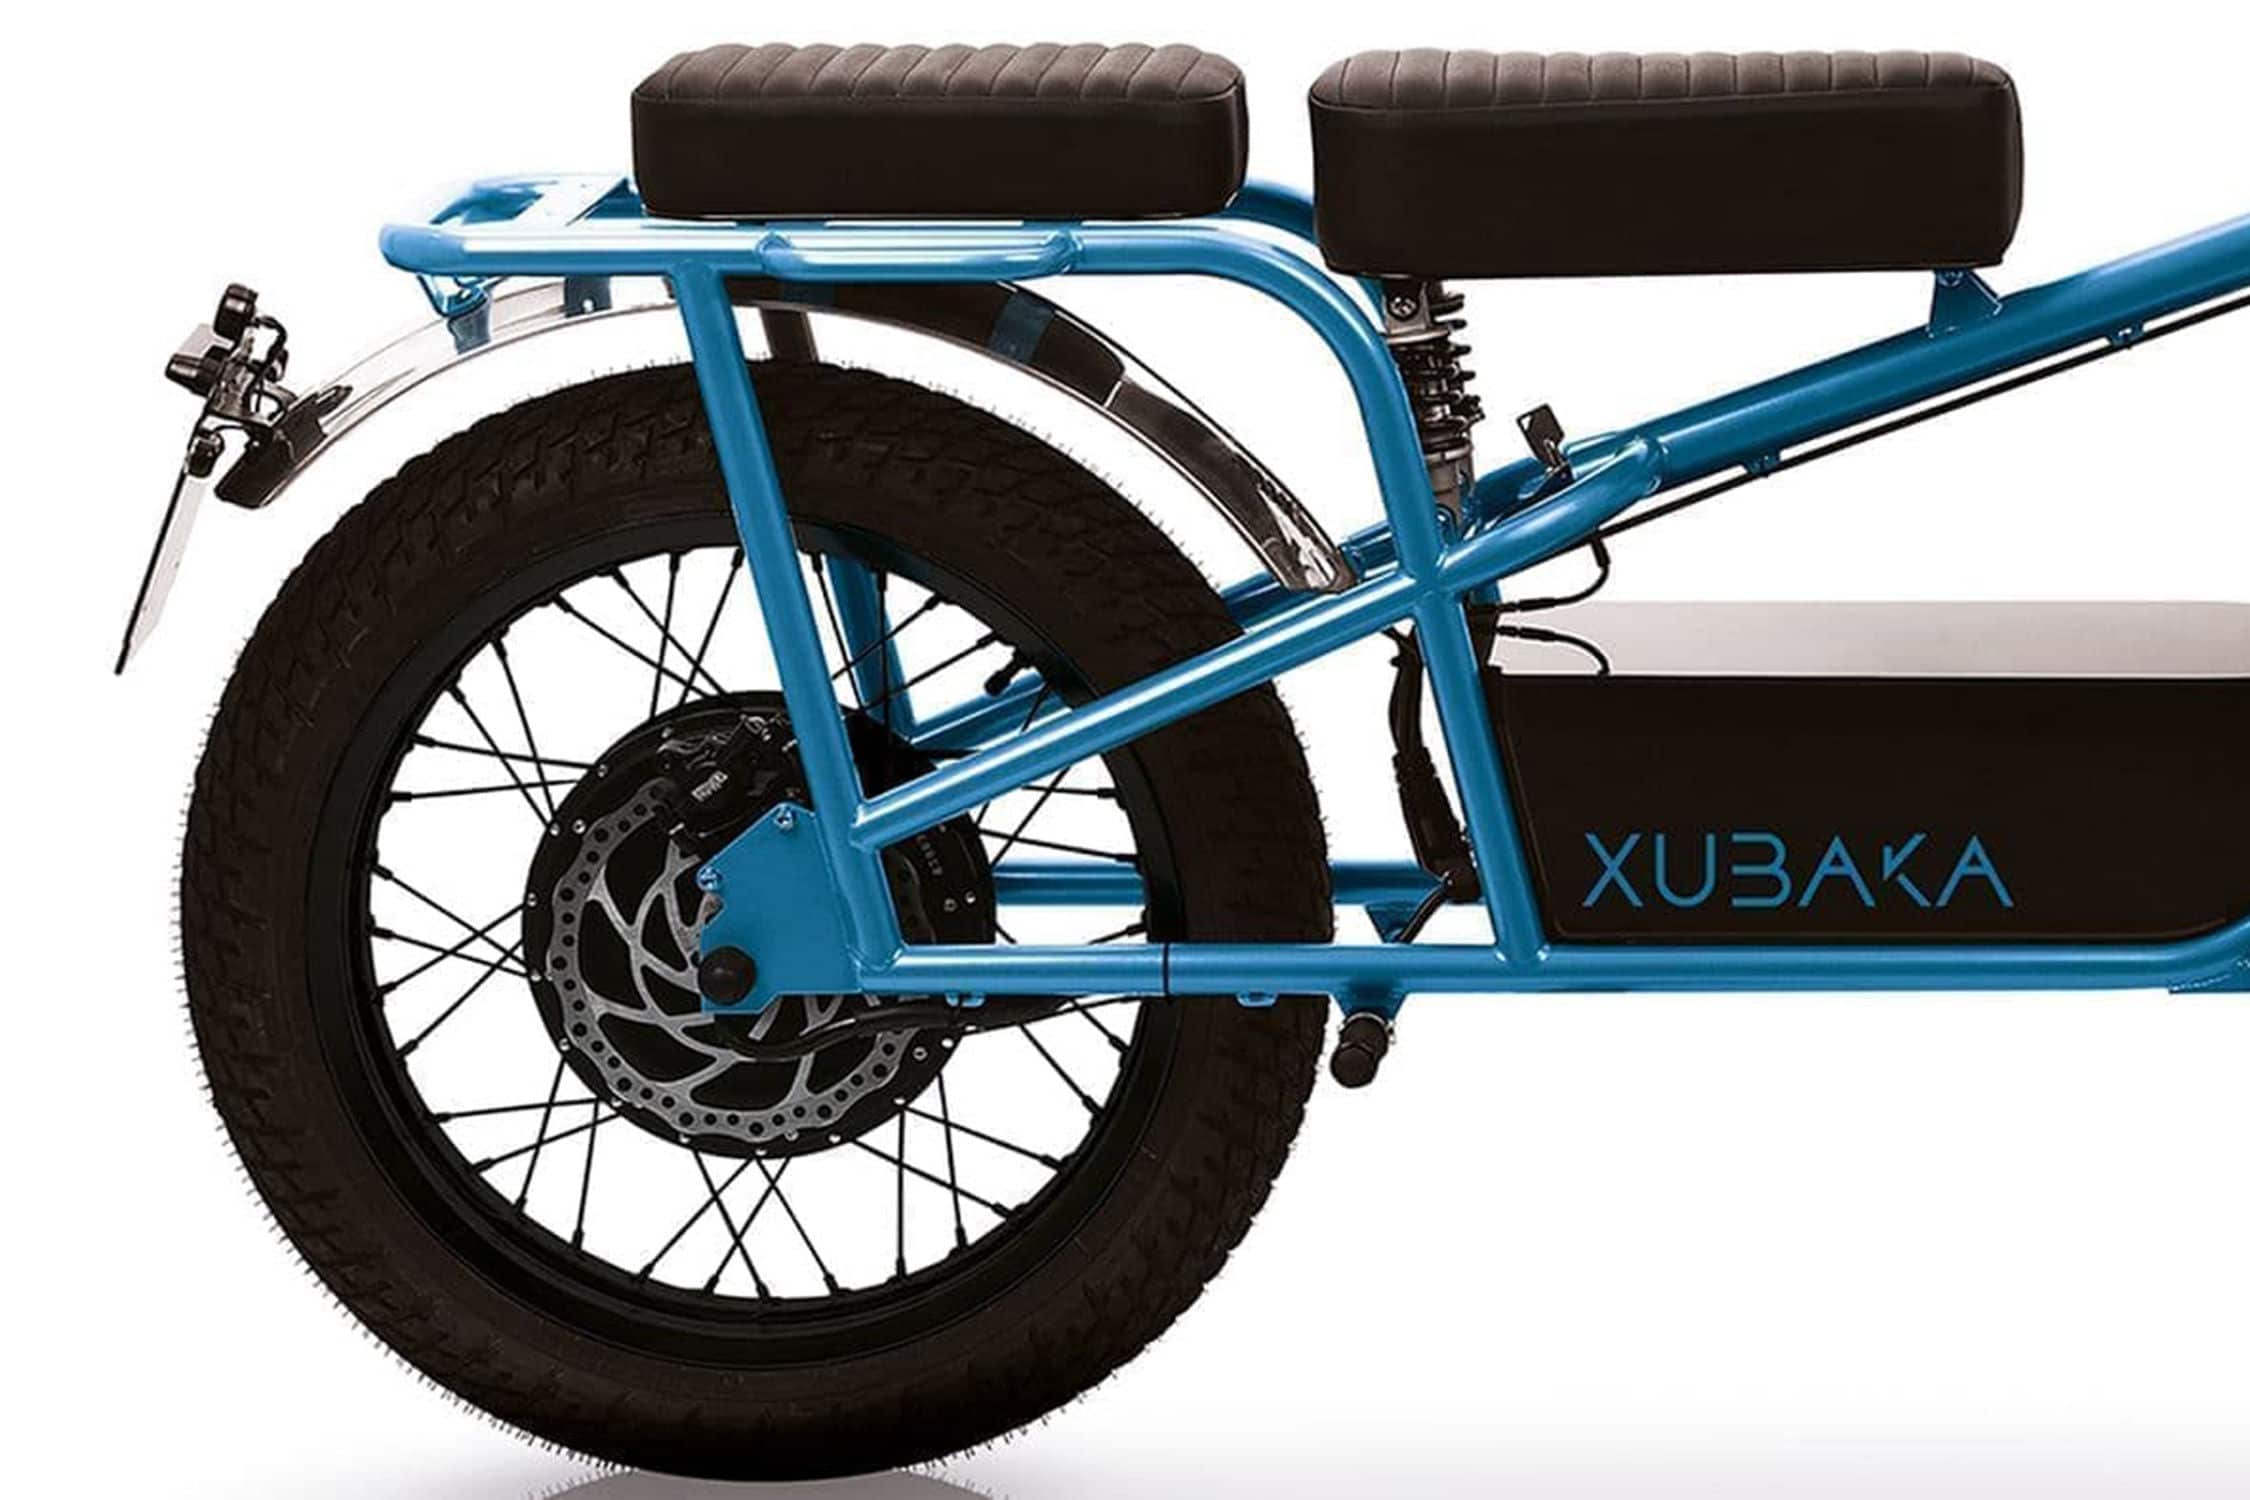 xubaka-une-petite-moto-electrique-francaise-dans-les-allees-du-ces-24096-4.jpg